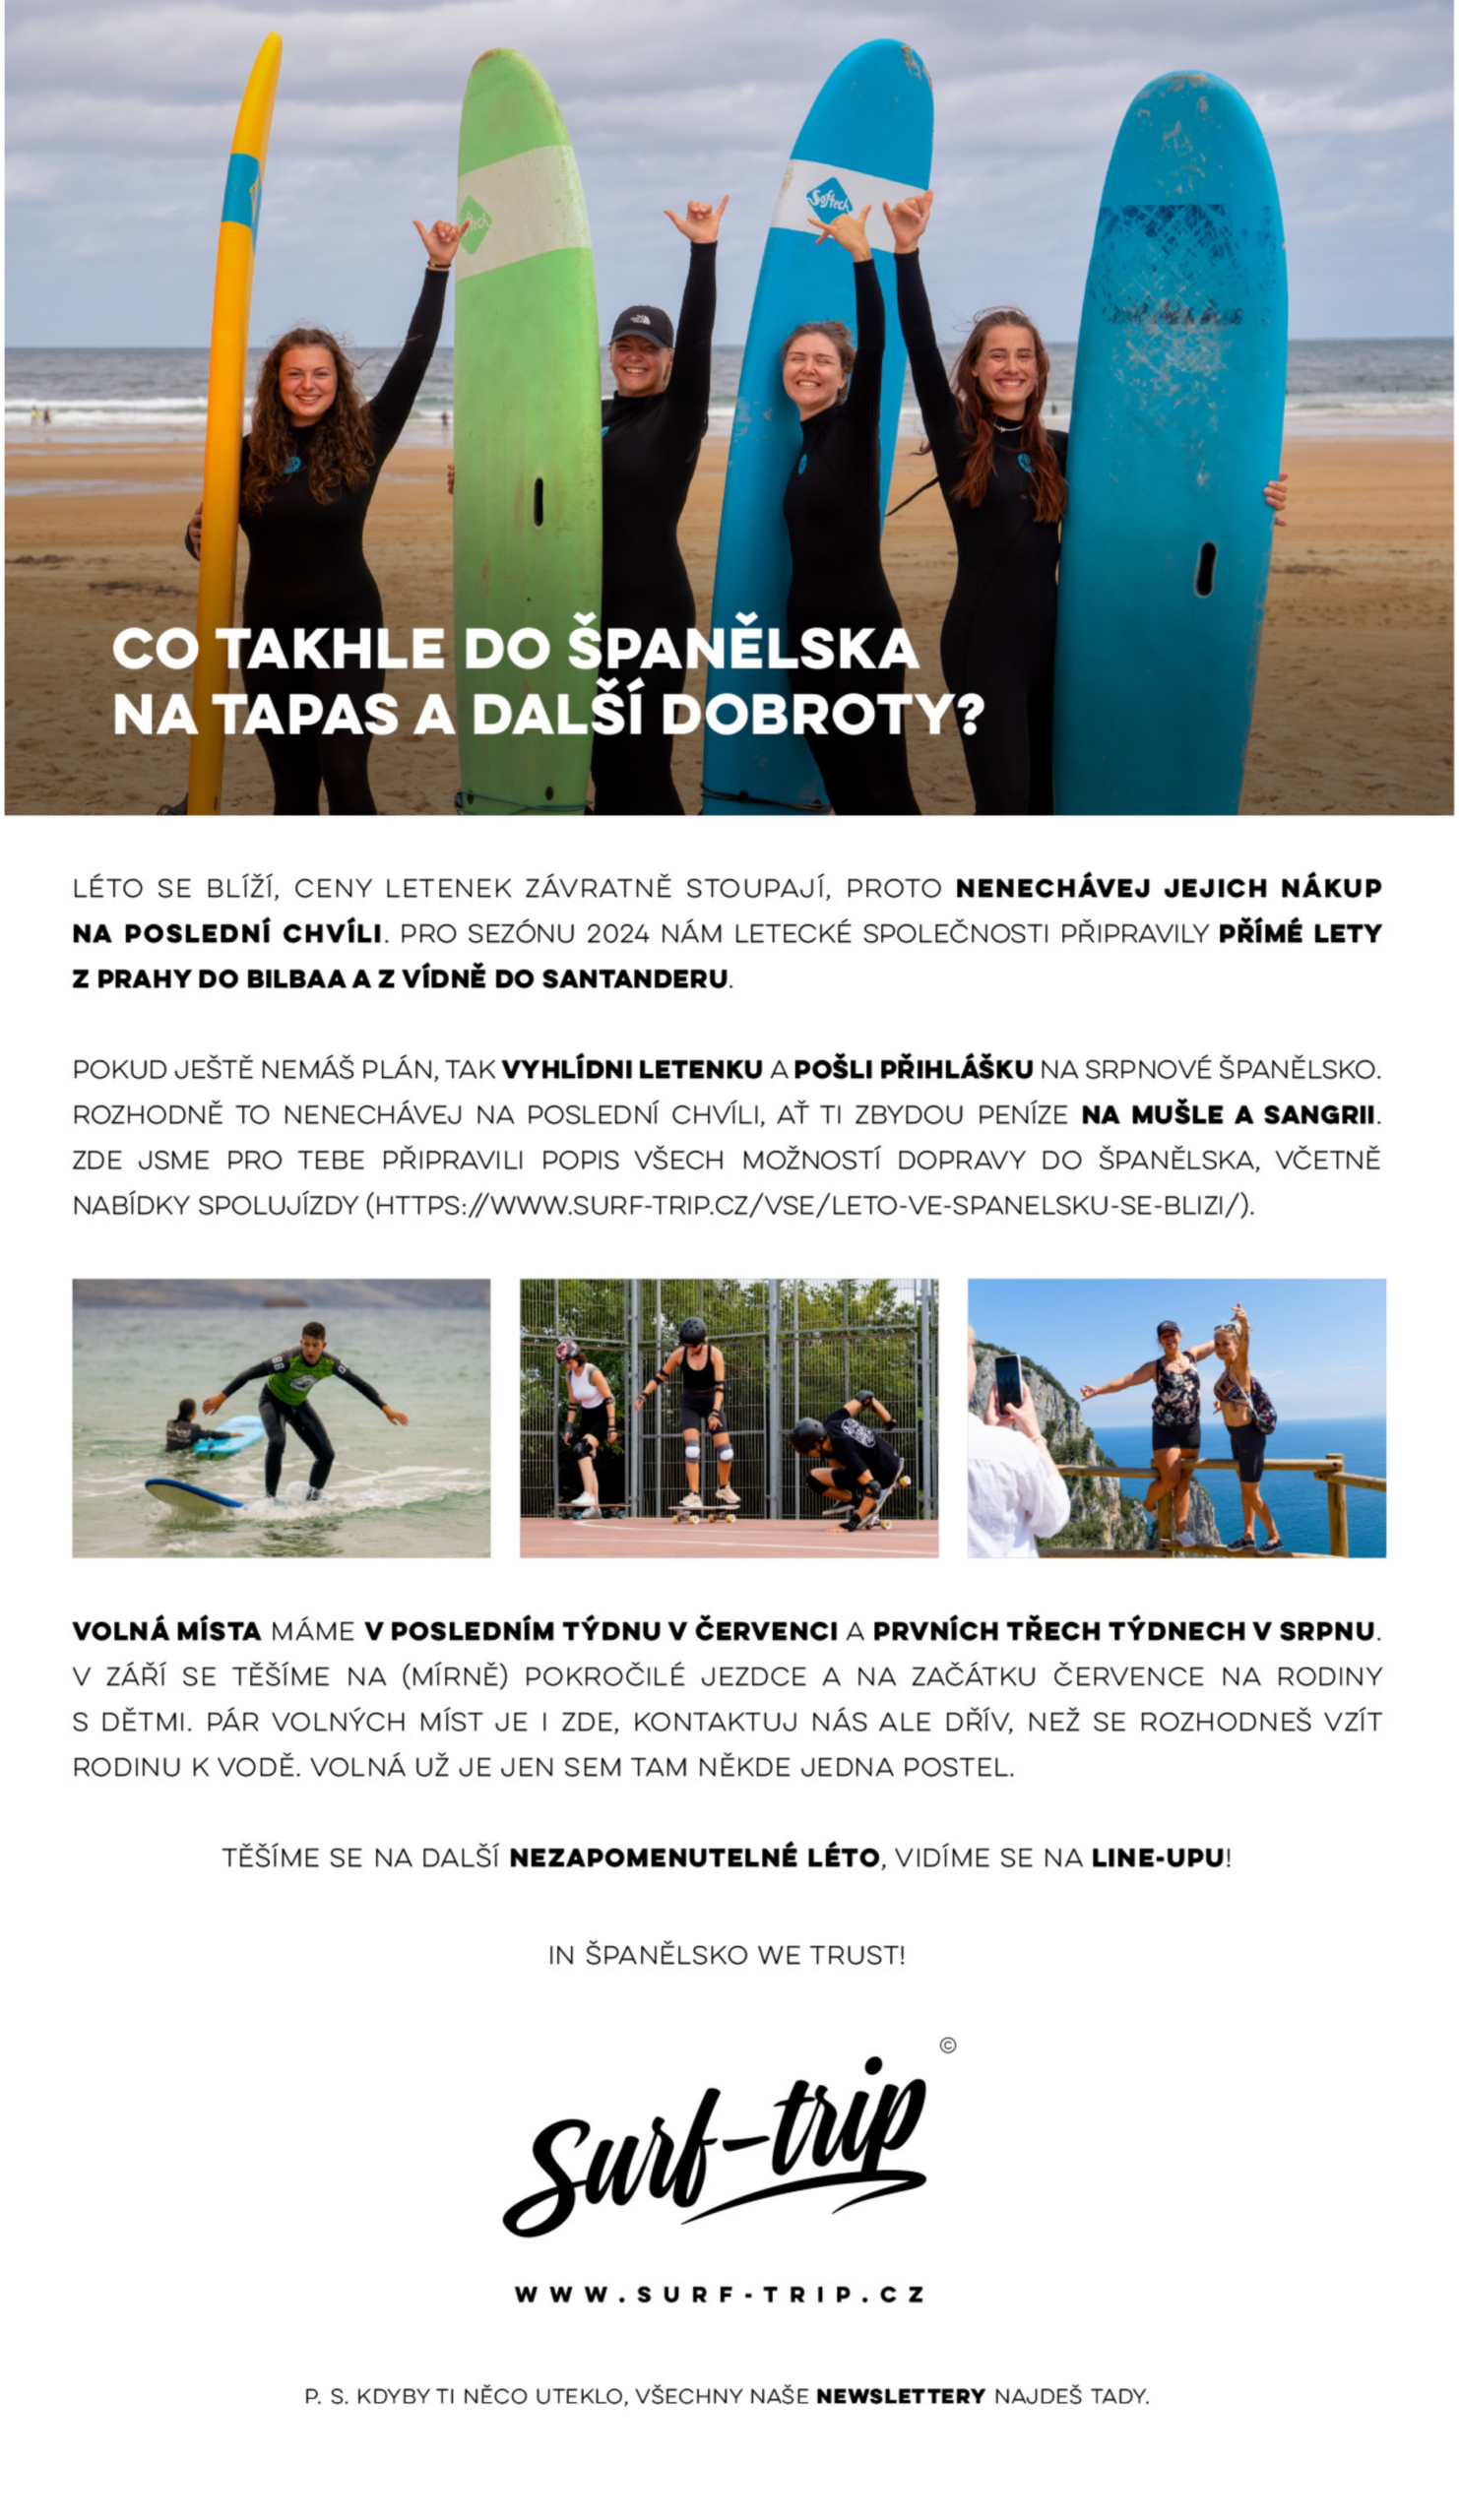 05/24 - Rezervuj pobyt ve Španělsku a užij si surfování!